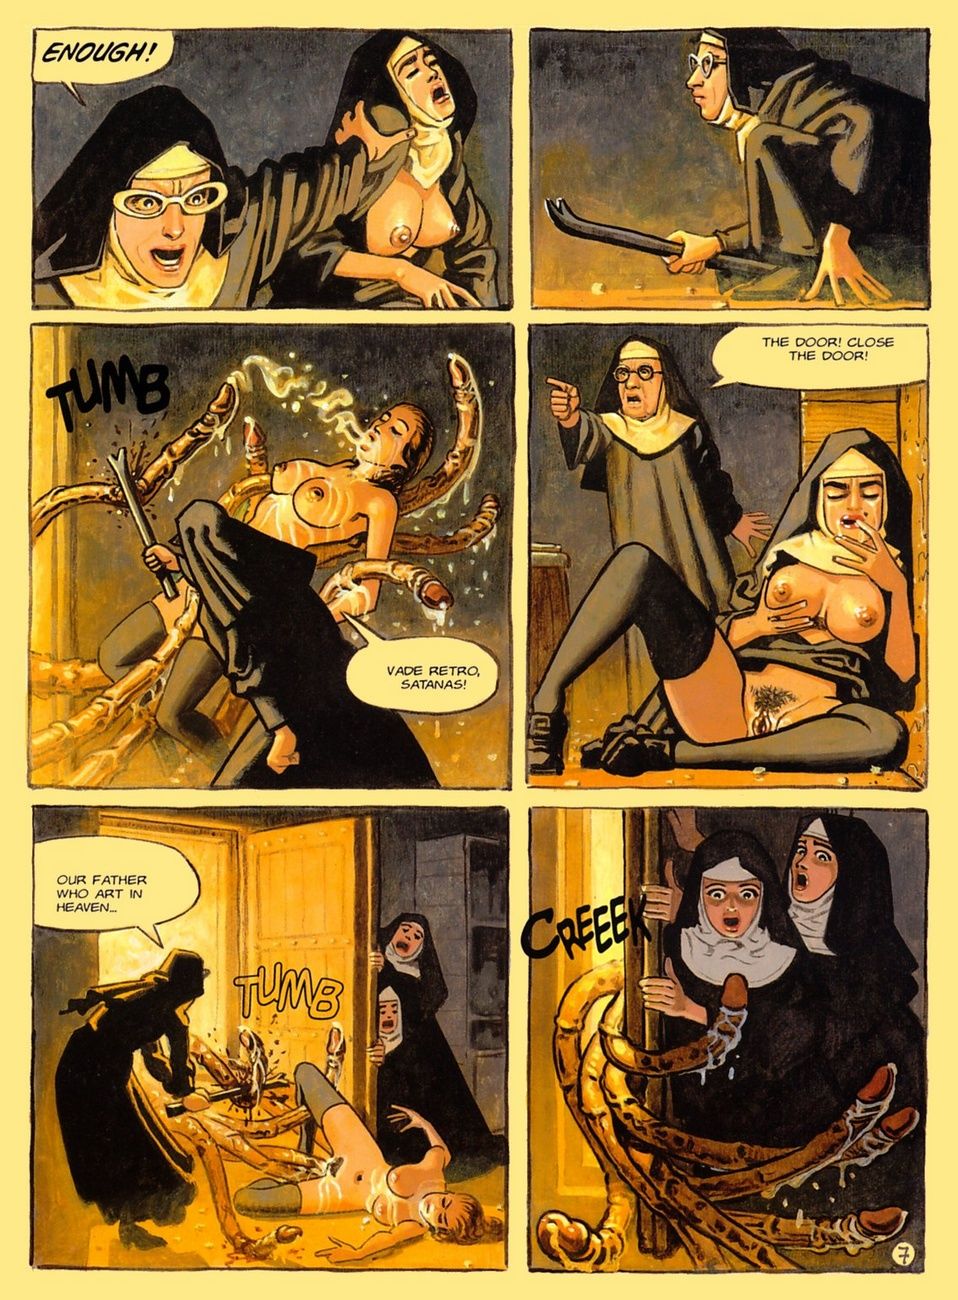 il convento di inferno parte 2 page 1